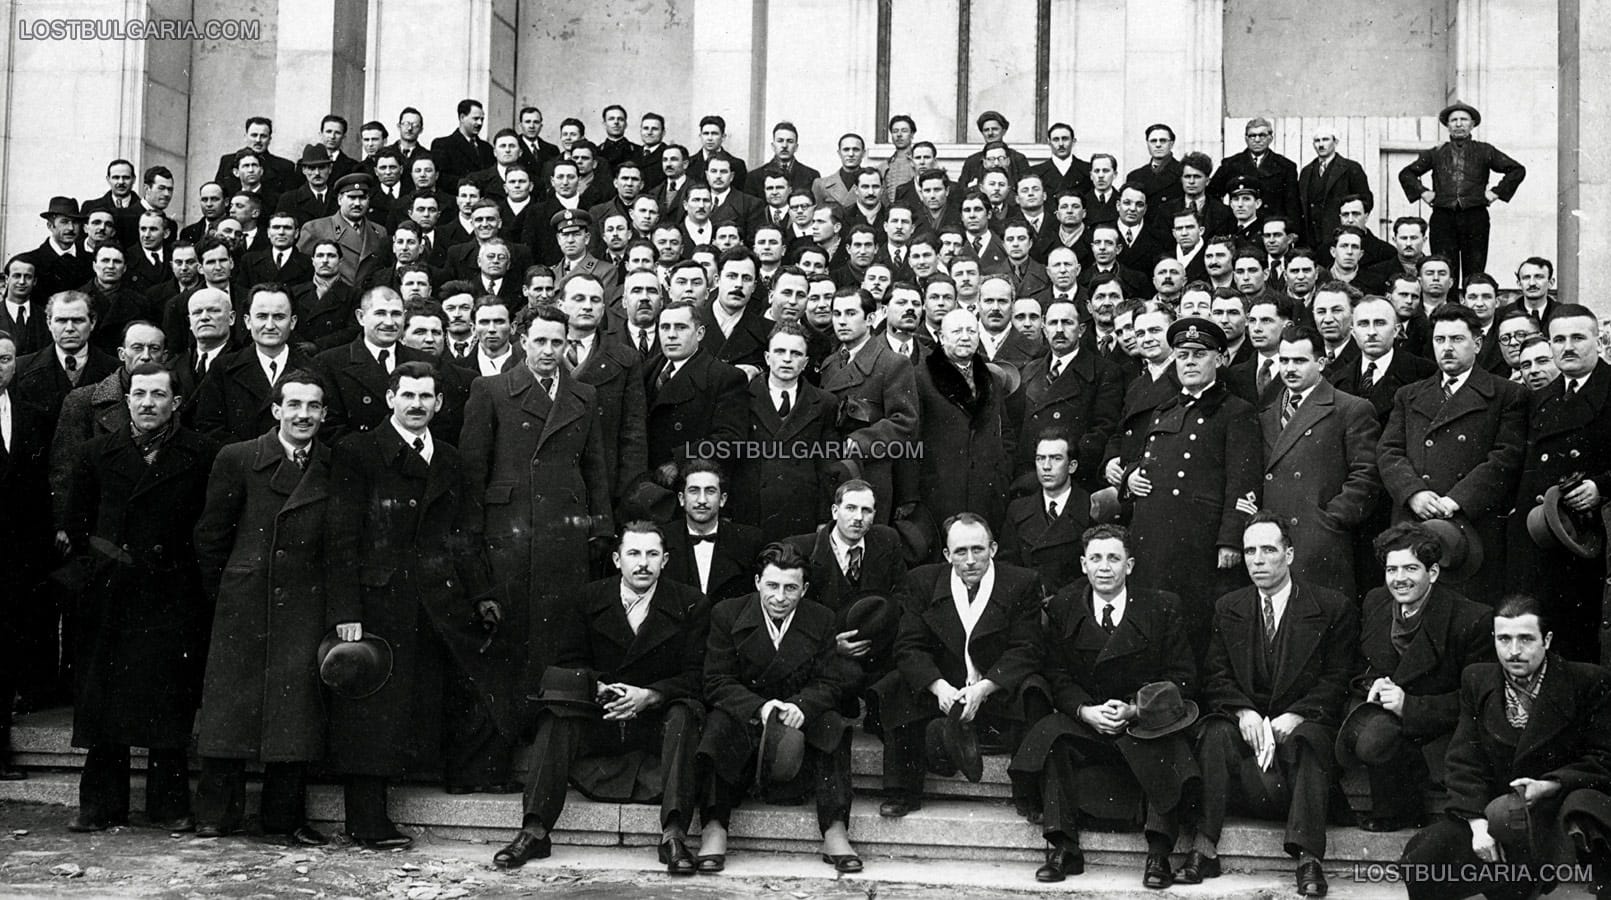 Снимка за спомен на делегати от конгреса на техниците със средно образование, София 1939 г.